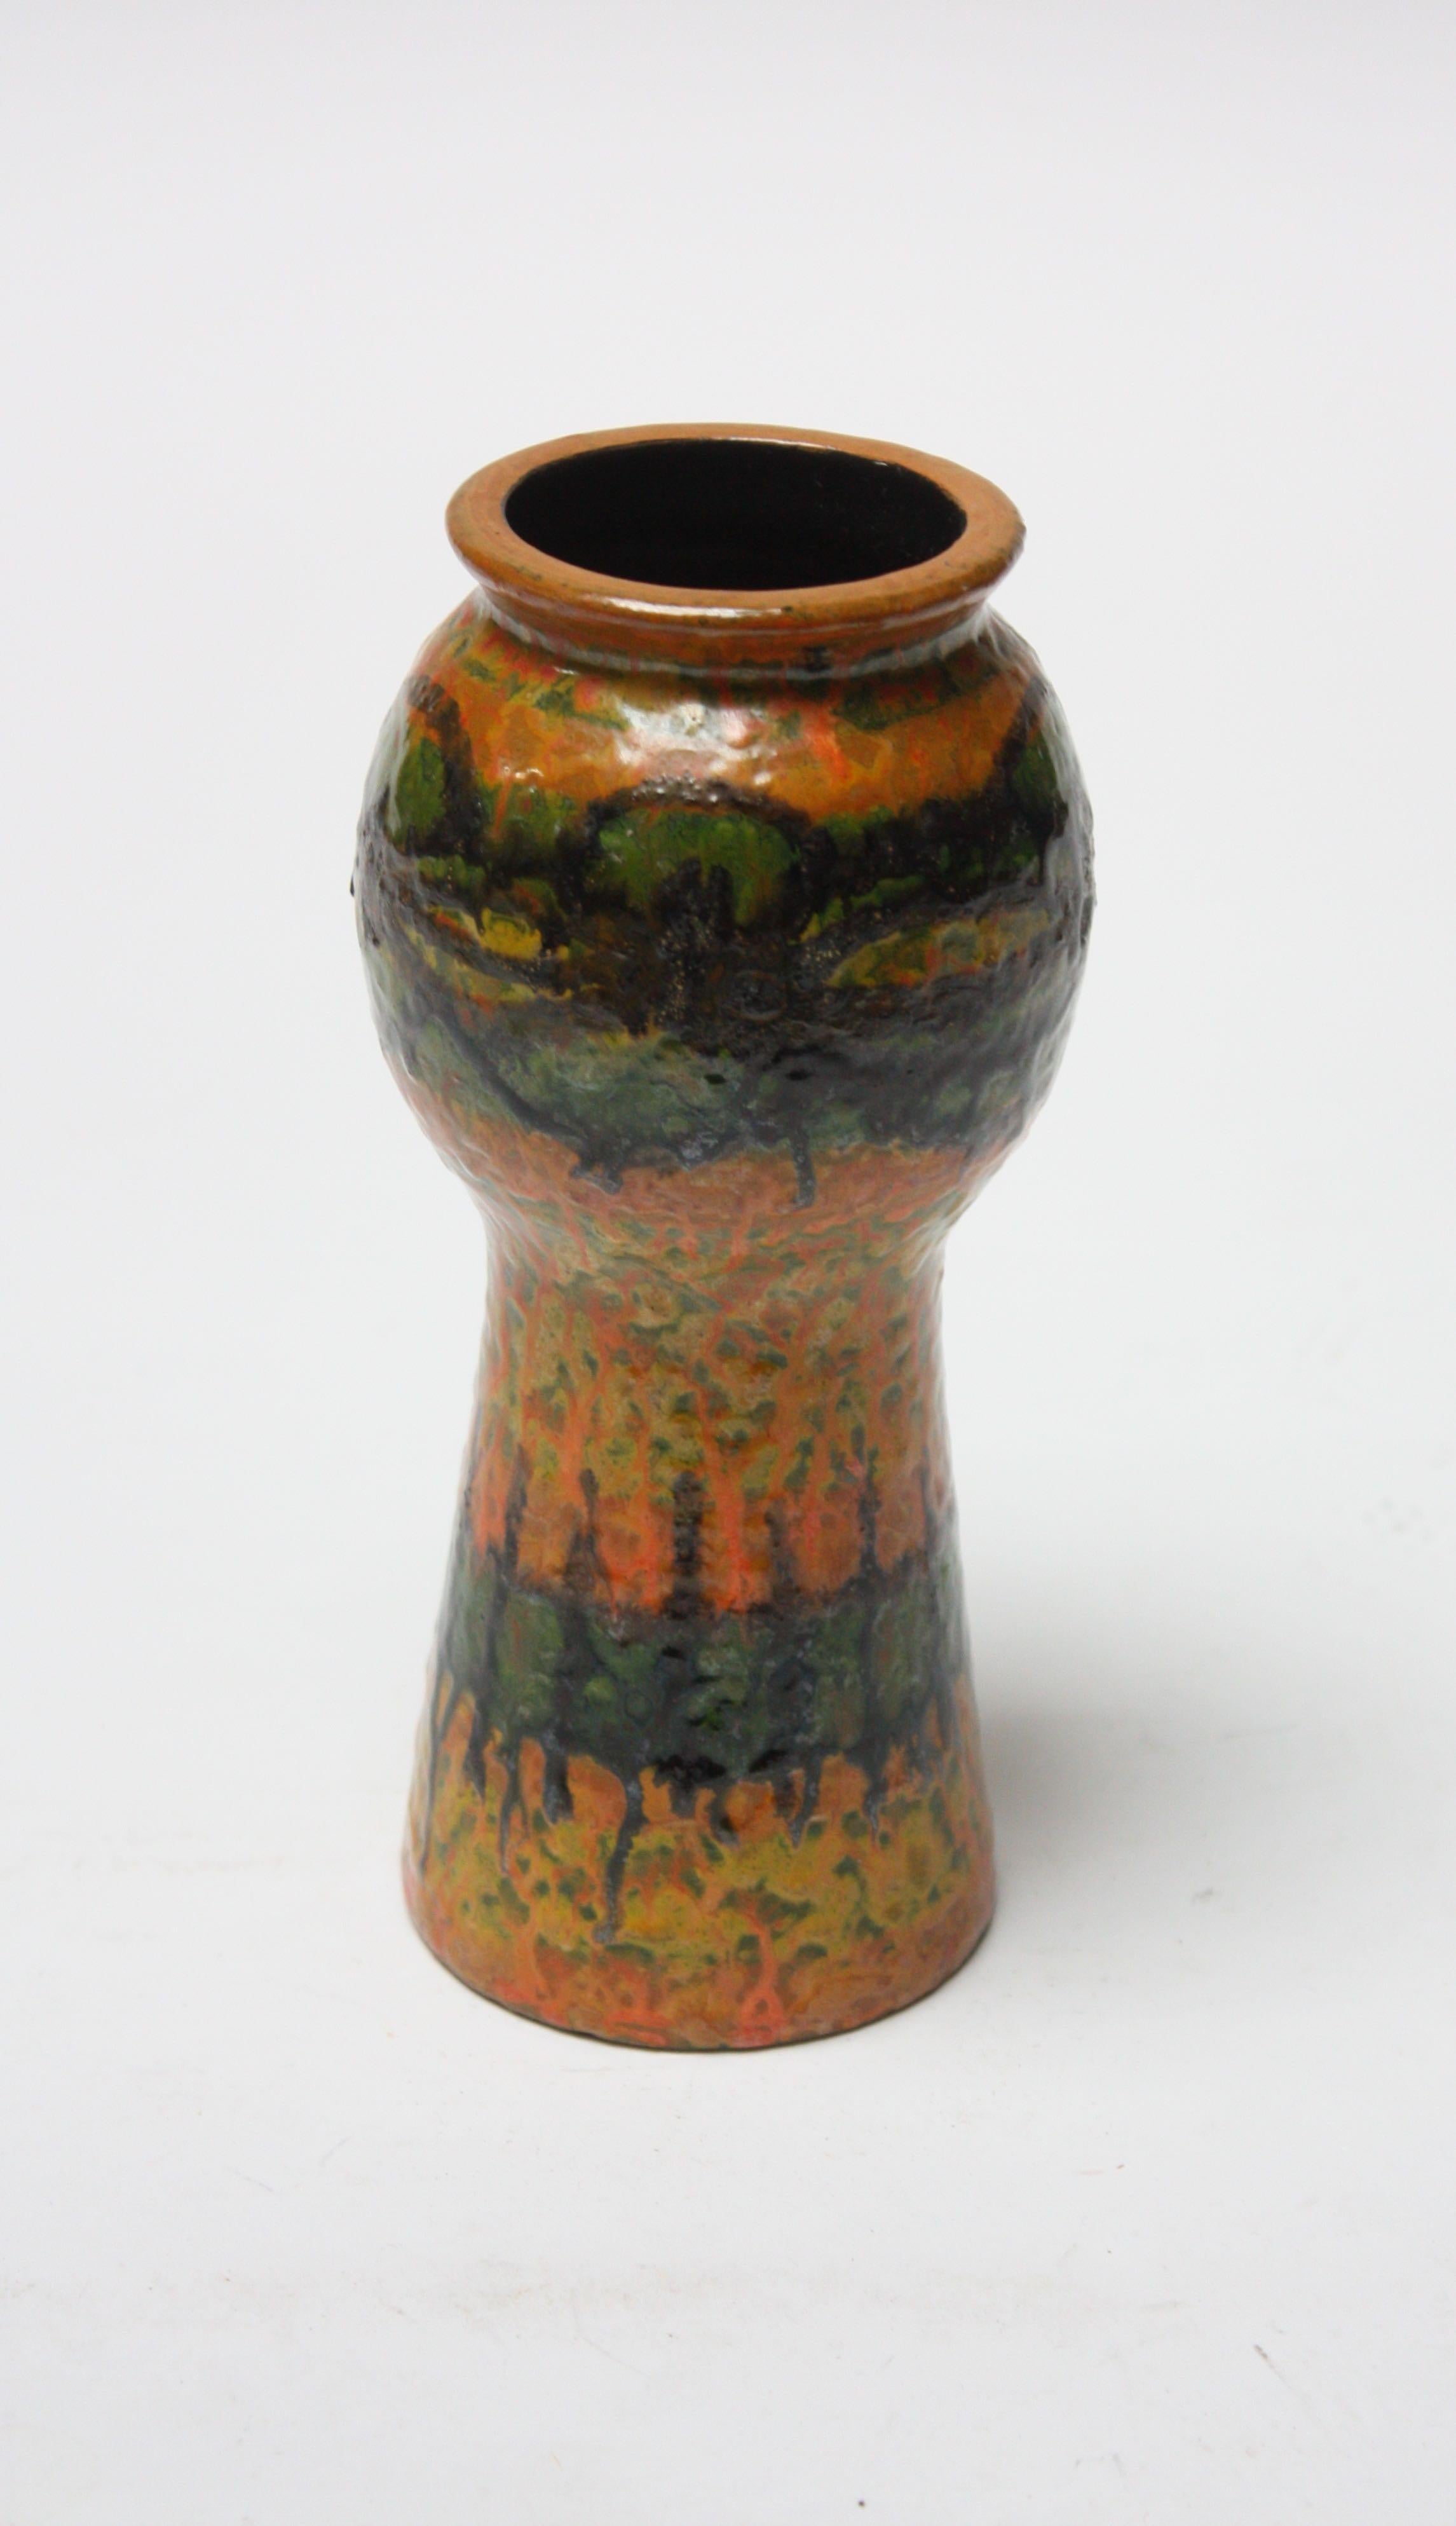 Vase en céramique de studio de petite taille vers les années 1960 (probablement italien mais non marqué). Motif élégant et couleurs attrayantes et audacieuses en vert, ocre, orange, jaune et noir.
Mesures : Diamètre 3,25